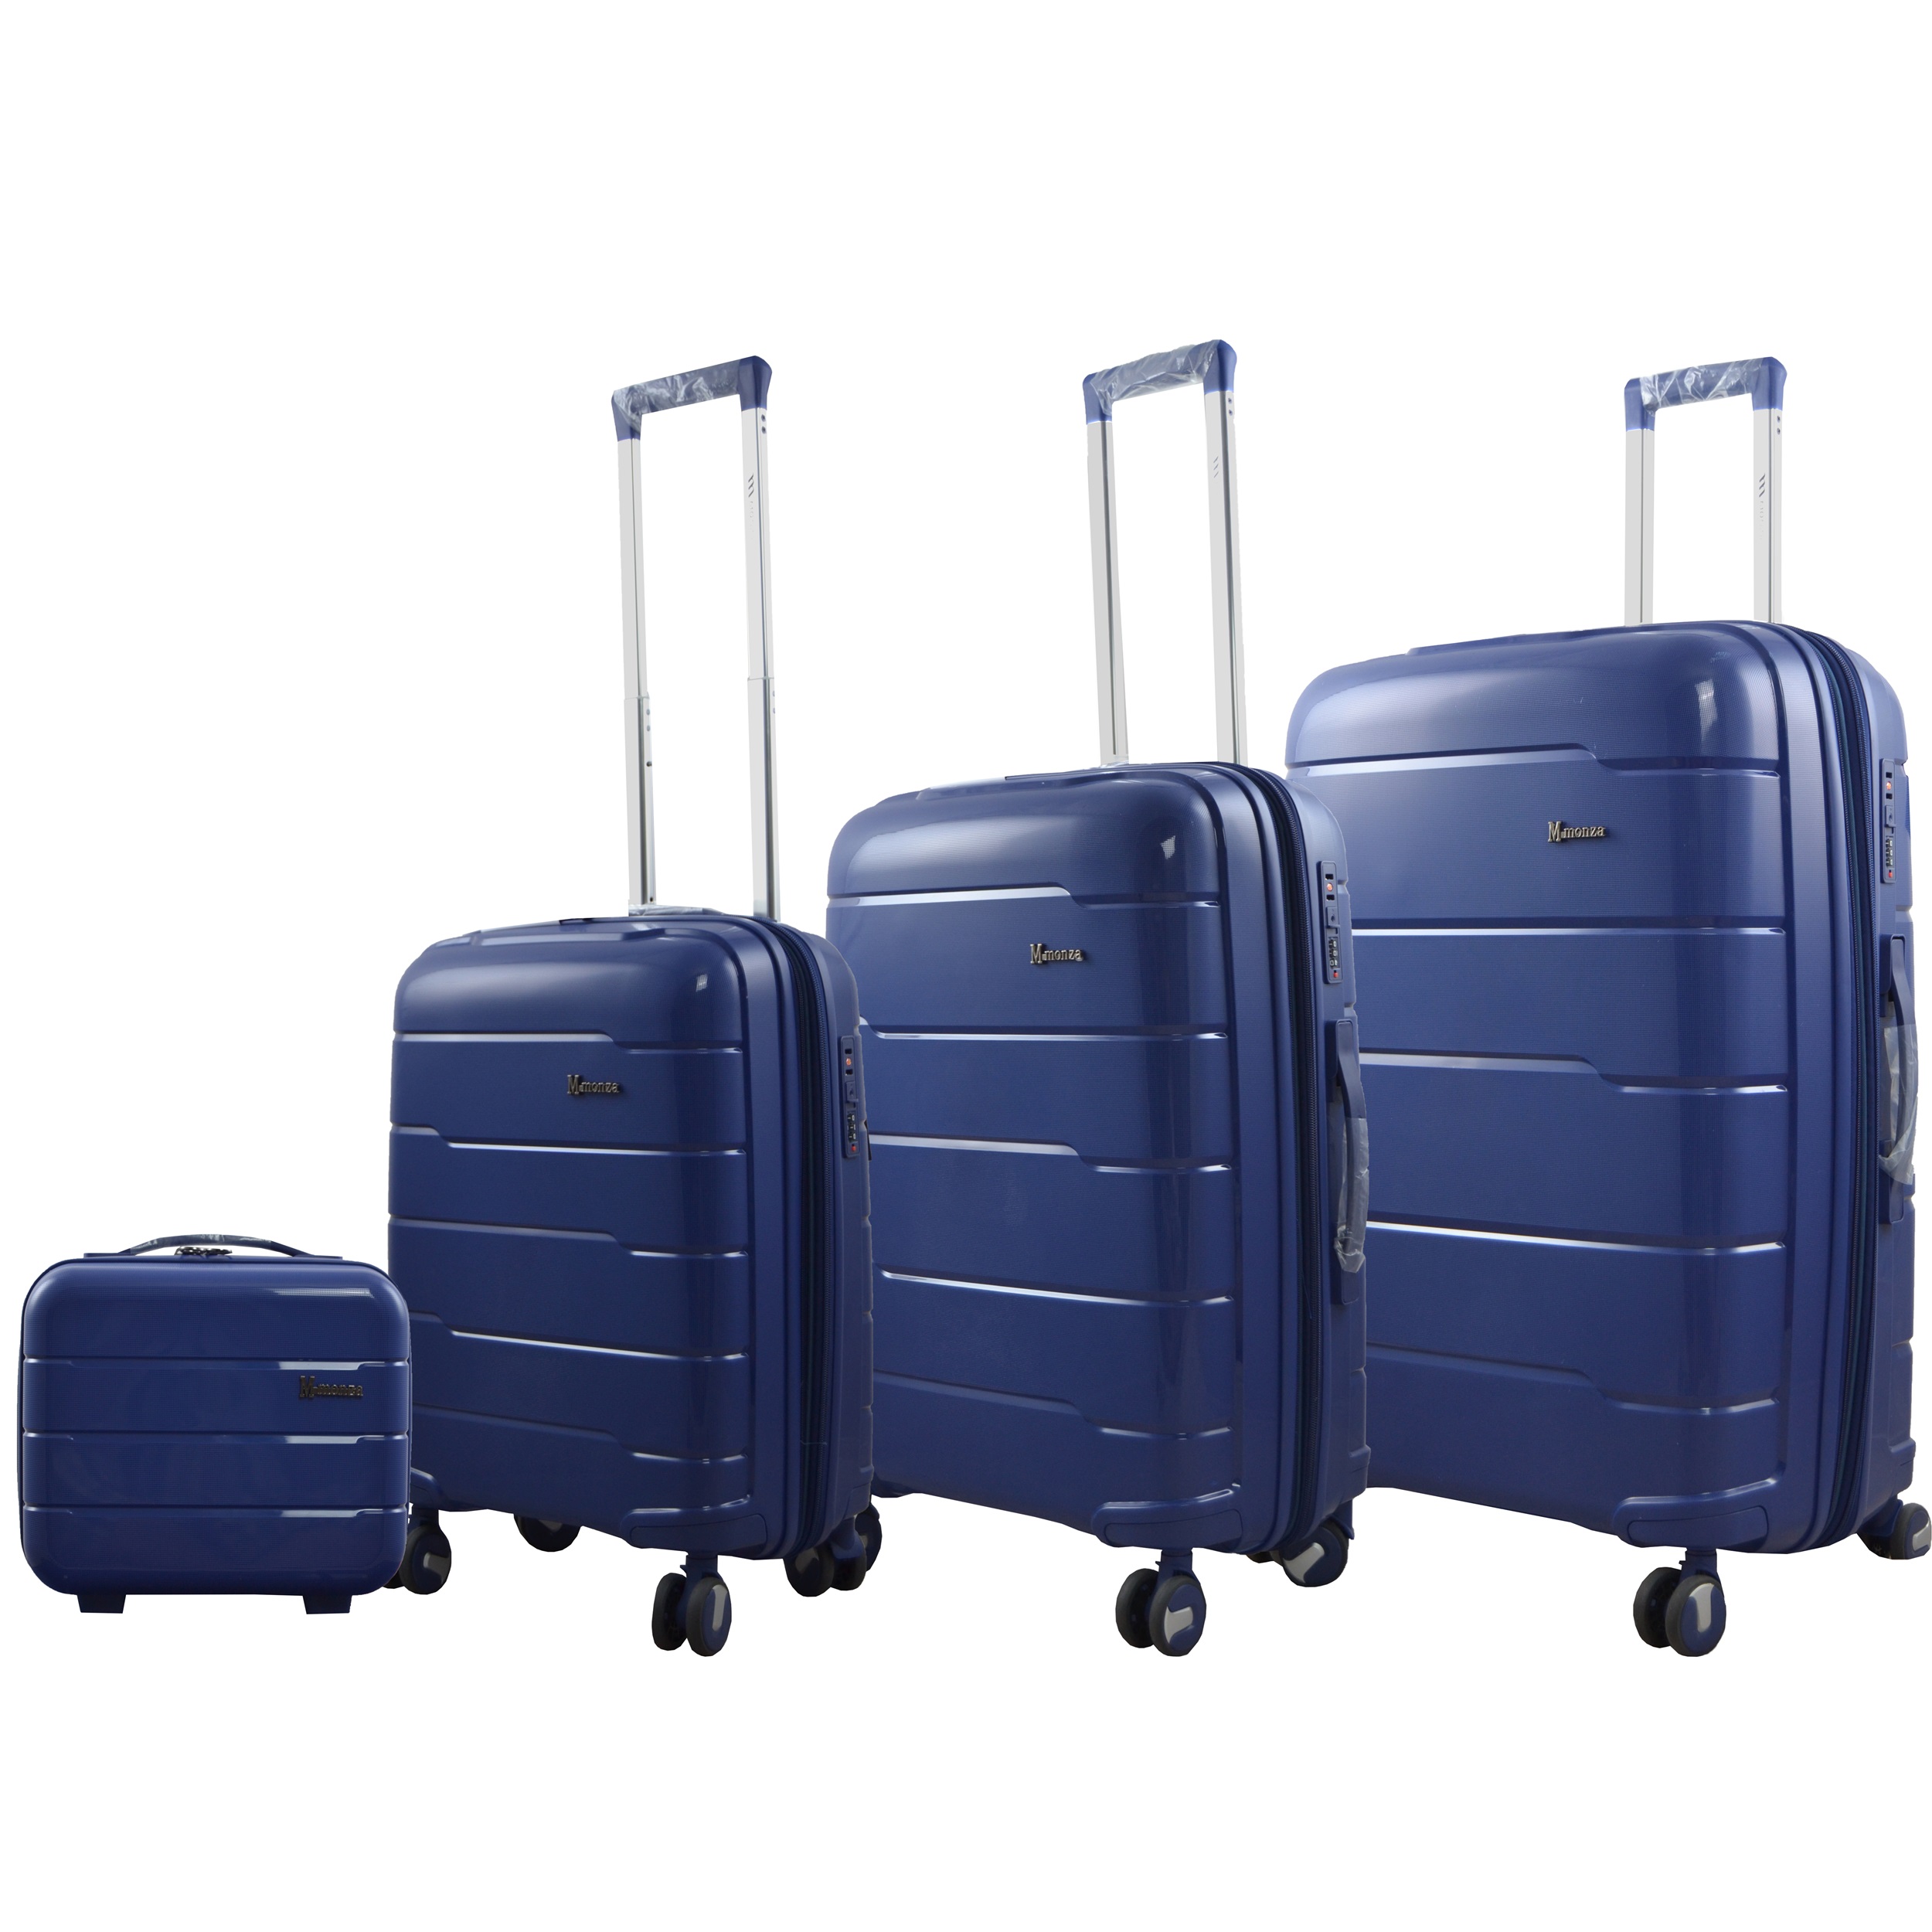 نکته خرید - قیمت روز مجموعه چهار عددی چمدان مونزا مدل P2021-4 خرید